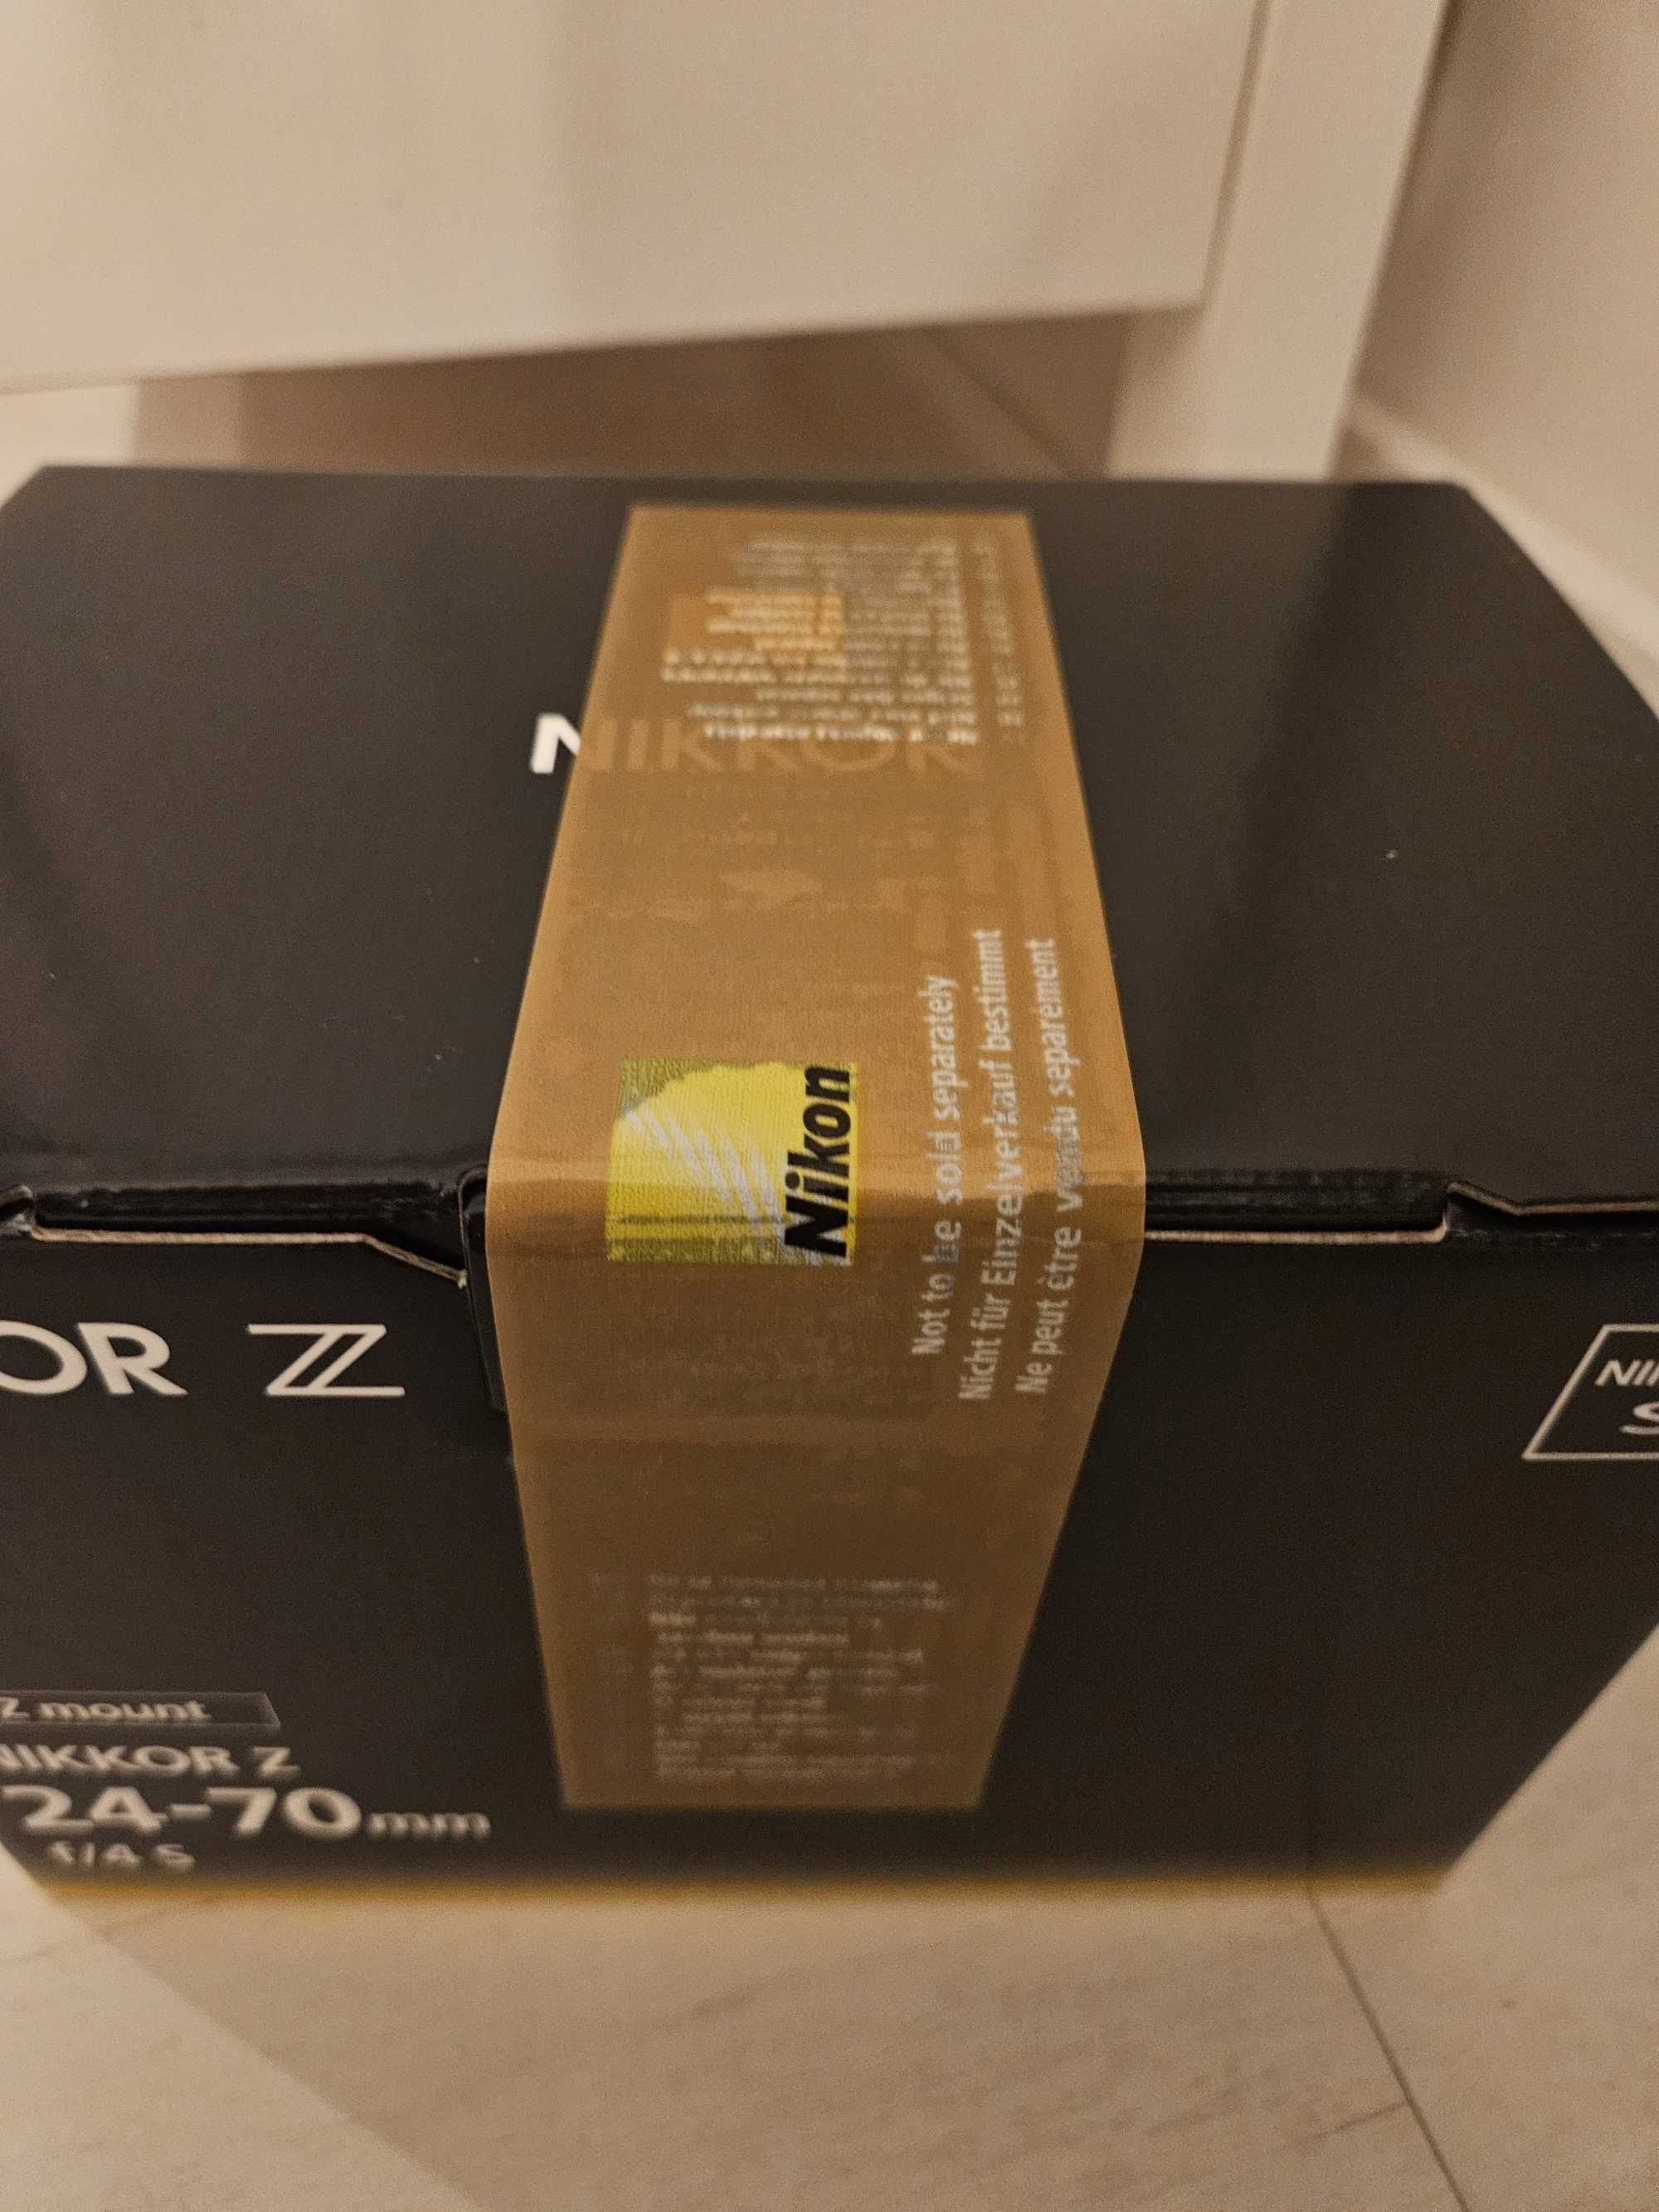 Nowy i zaplombowany obiektyw NIKKOR Z 24-70mm f/4 S  - w pudełku!